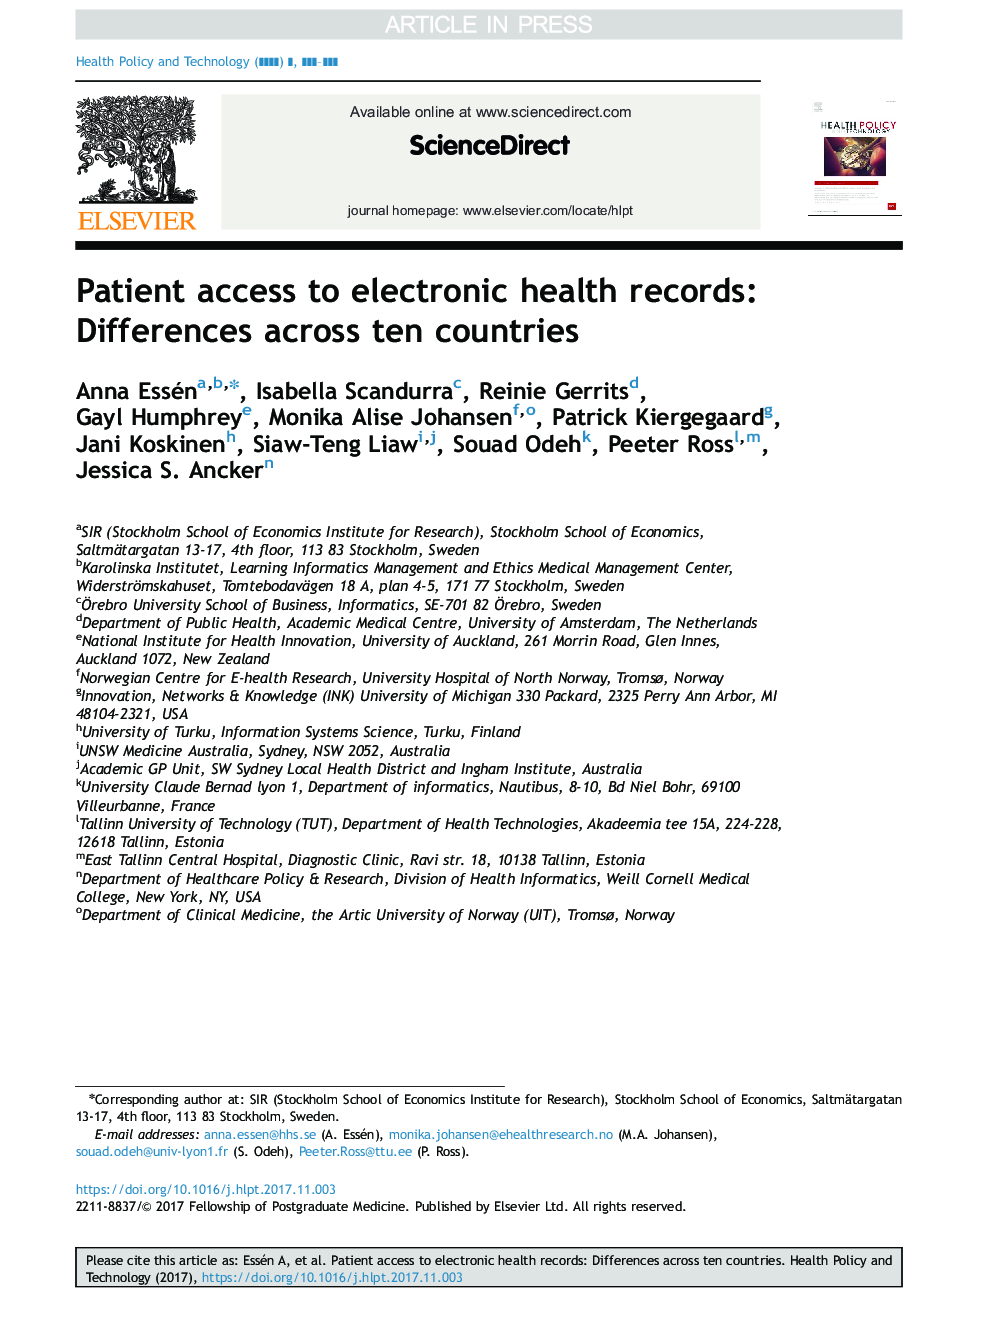 دسترسی بیمار به پرونده های سلامت الکترونیکی: تفاوت در ده کشور 